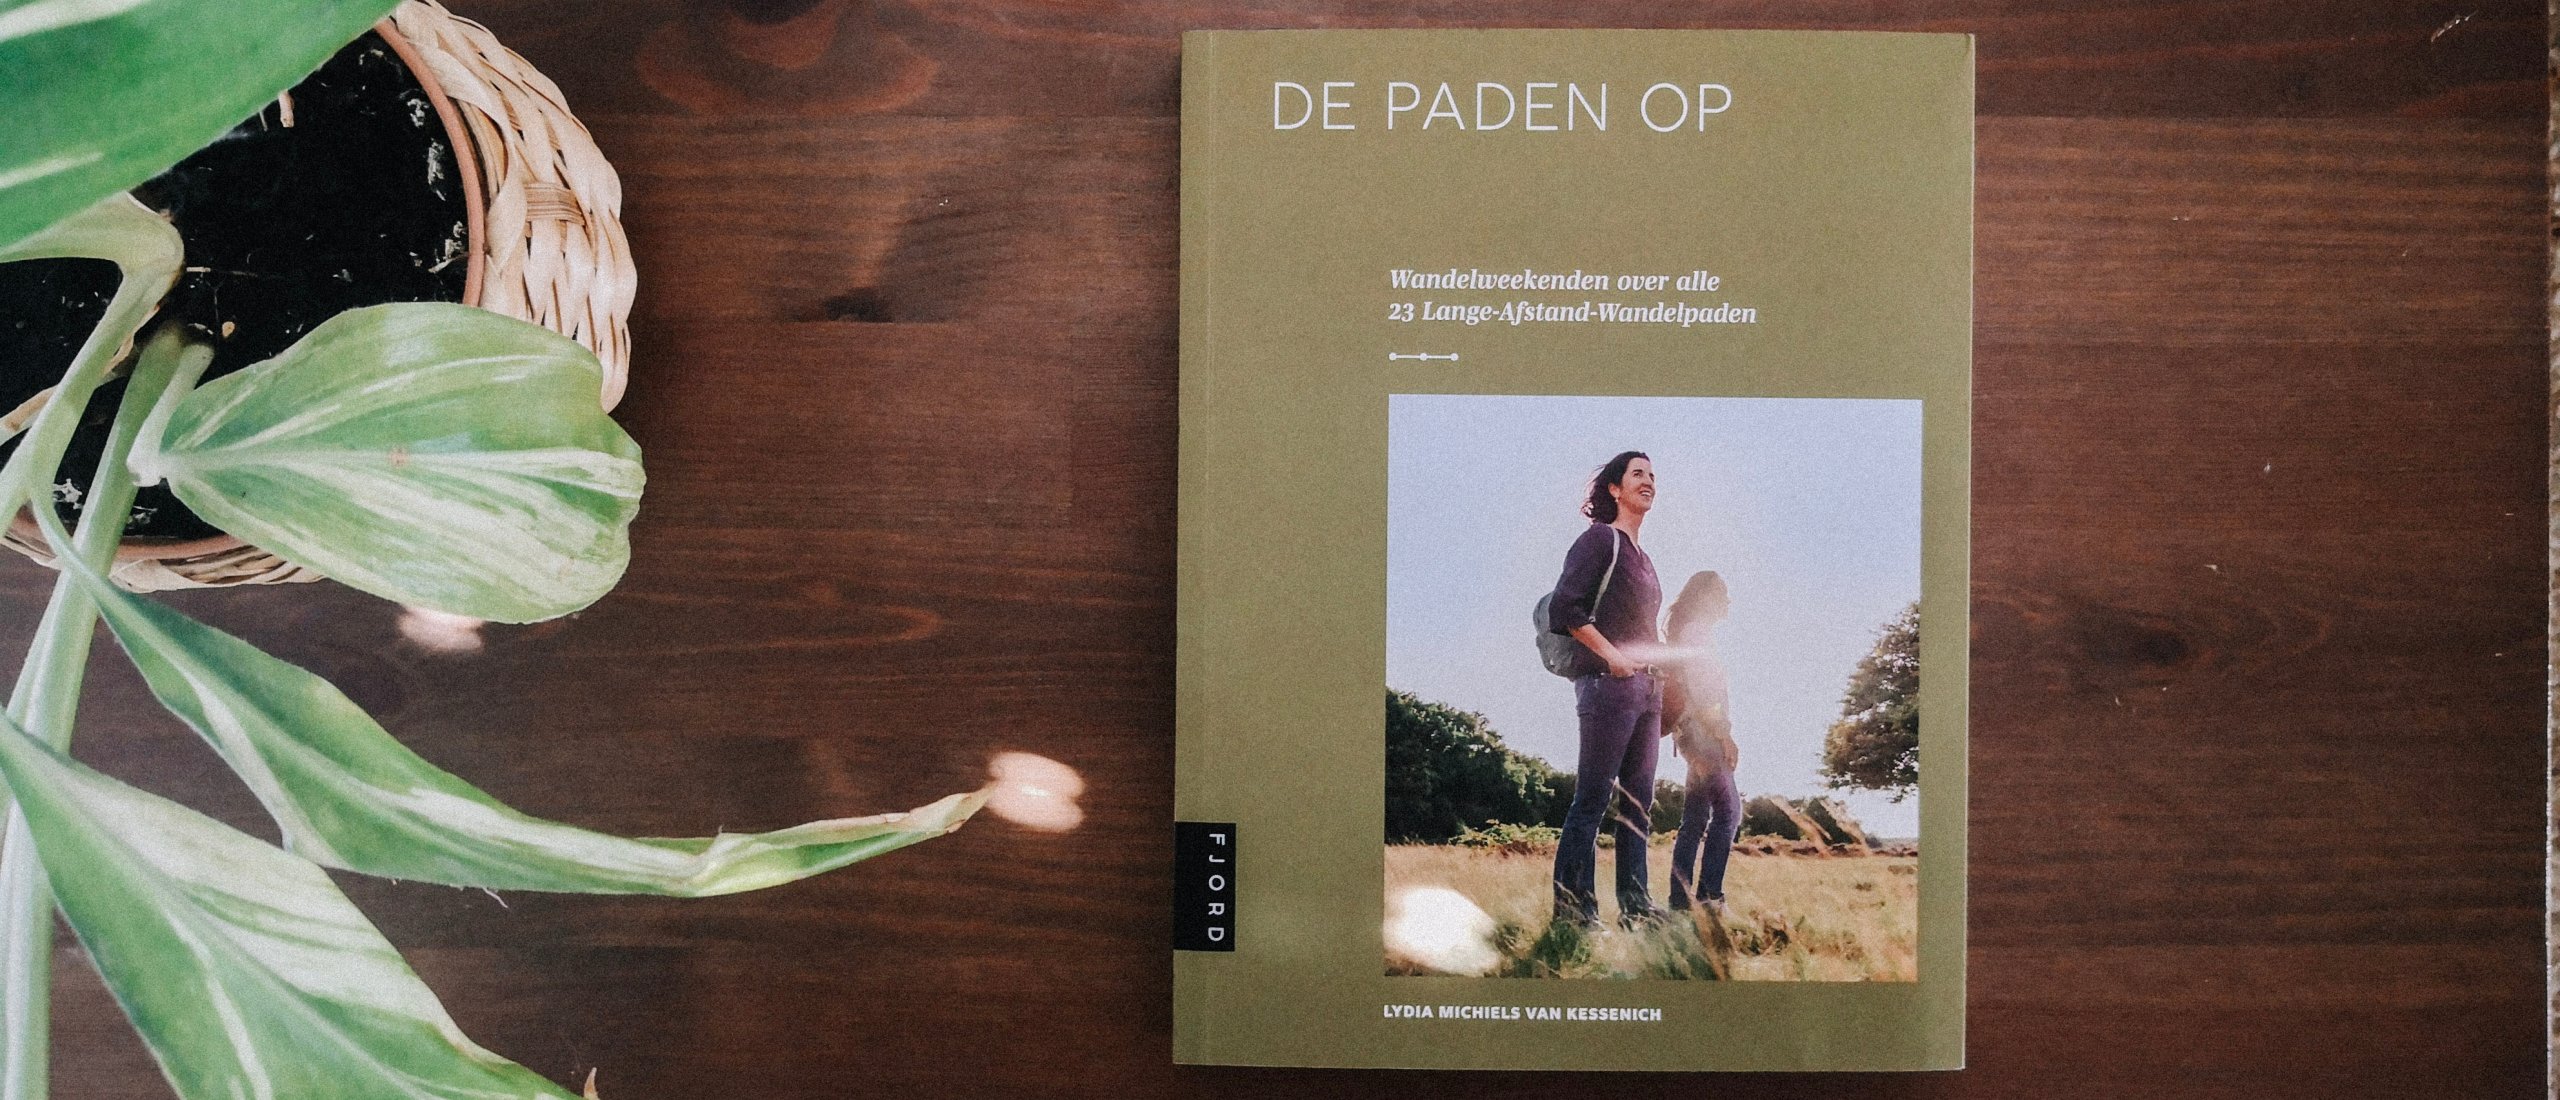 Wandelweekenden in Nederland verzameld in een boek